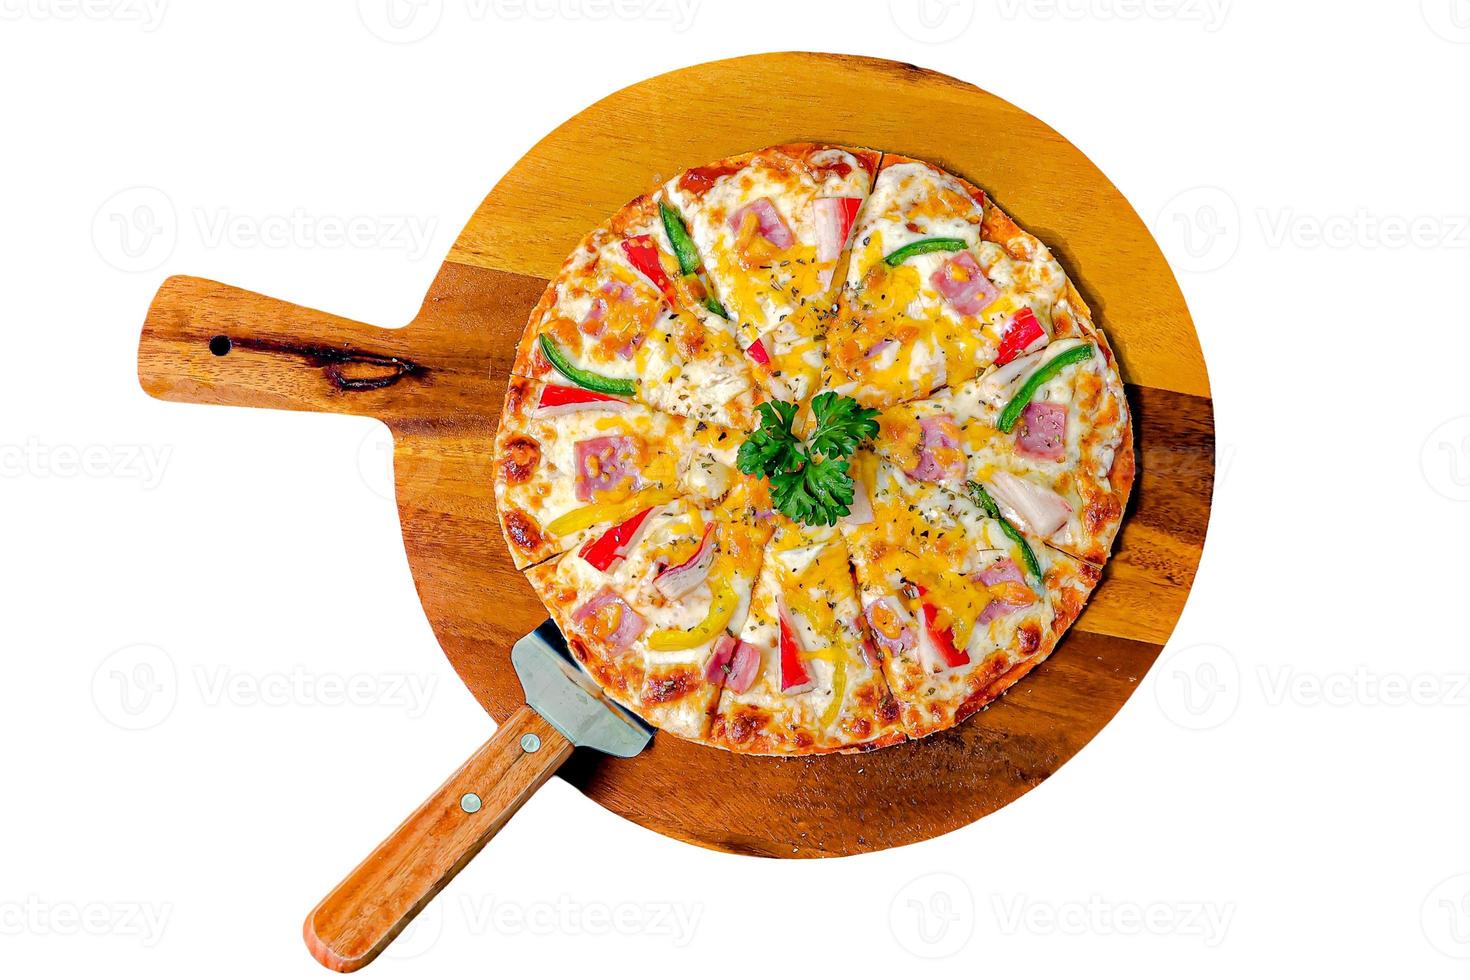 pizza con palitos de cangrejo, jamón y queso en bandeja de madera, foto de muy alta calidad sobre fondo blanco